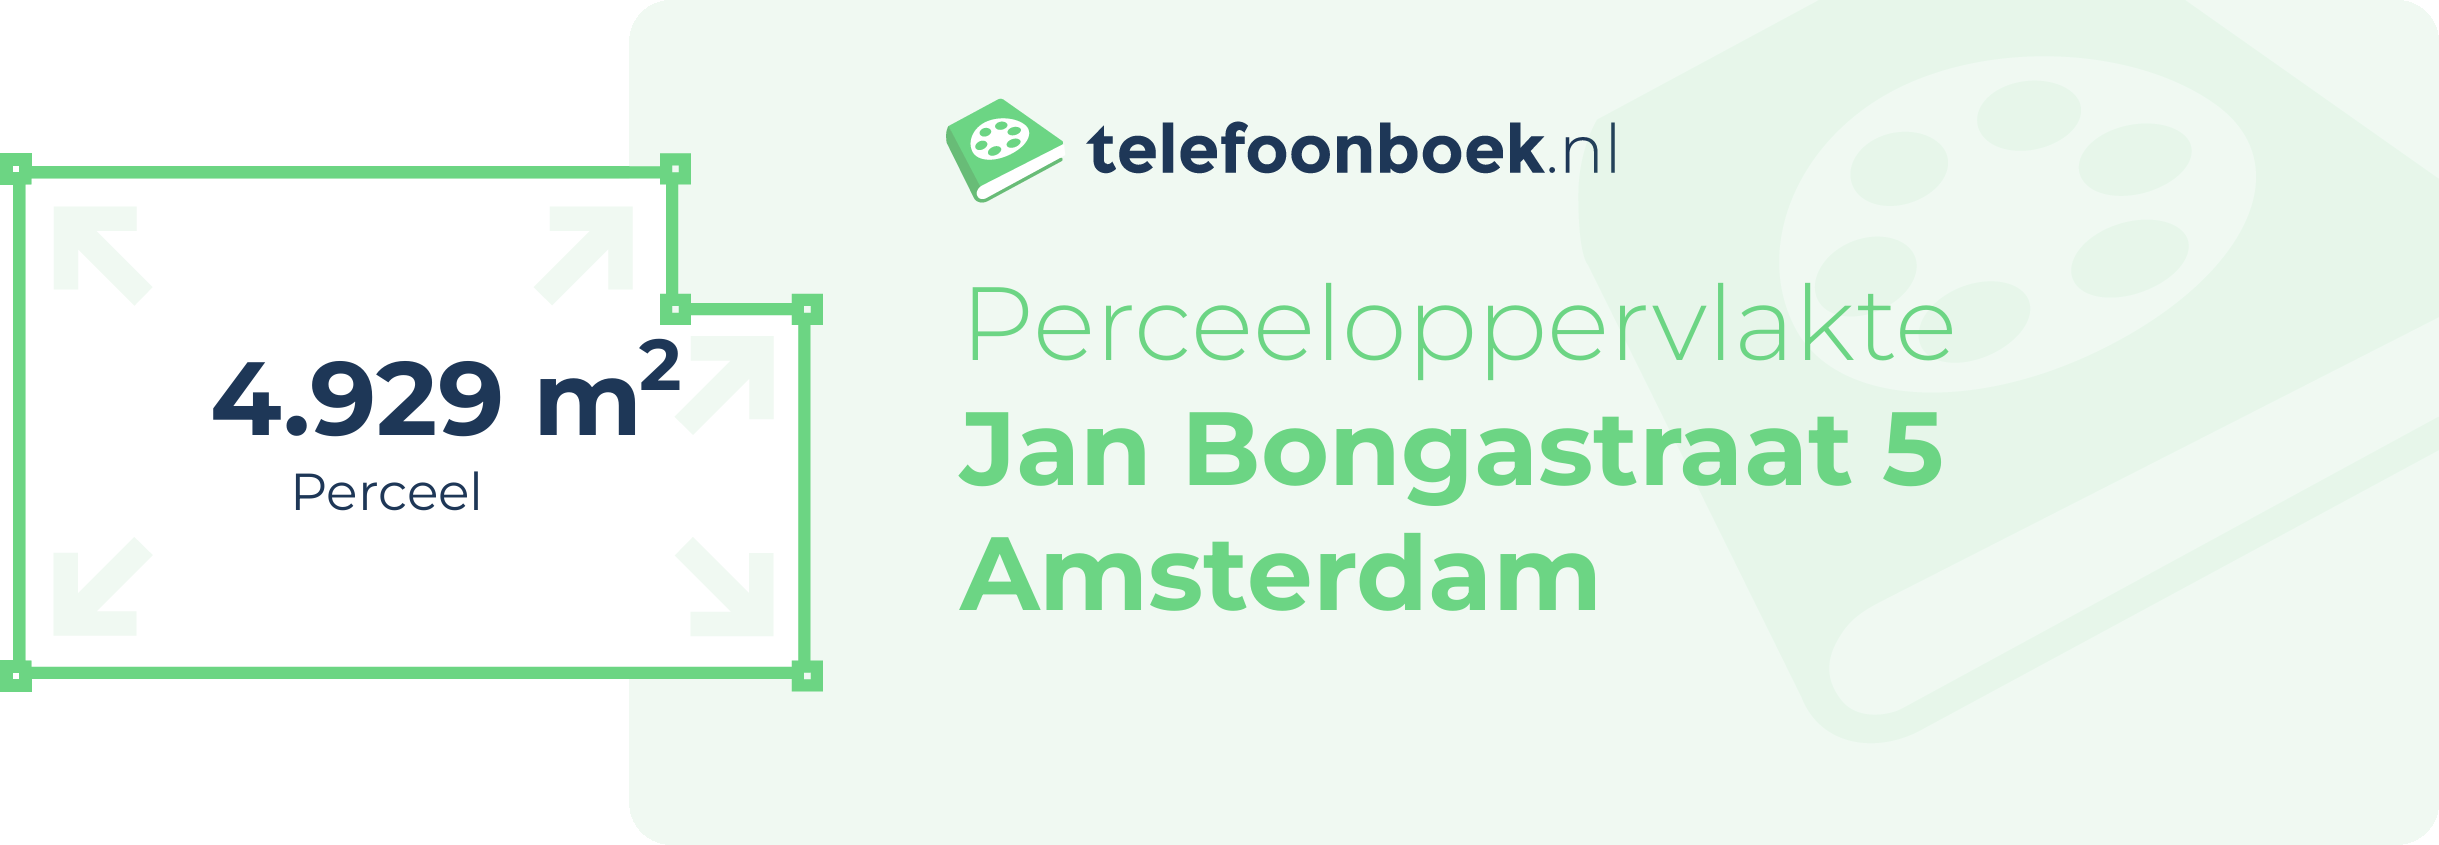 Perceeloppervlakte Jan Bongastraat 5 Amsterdam